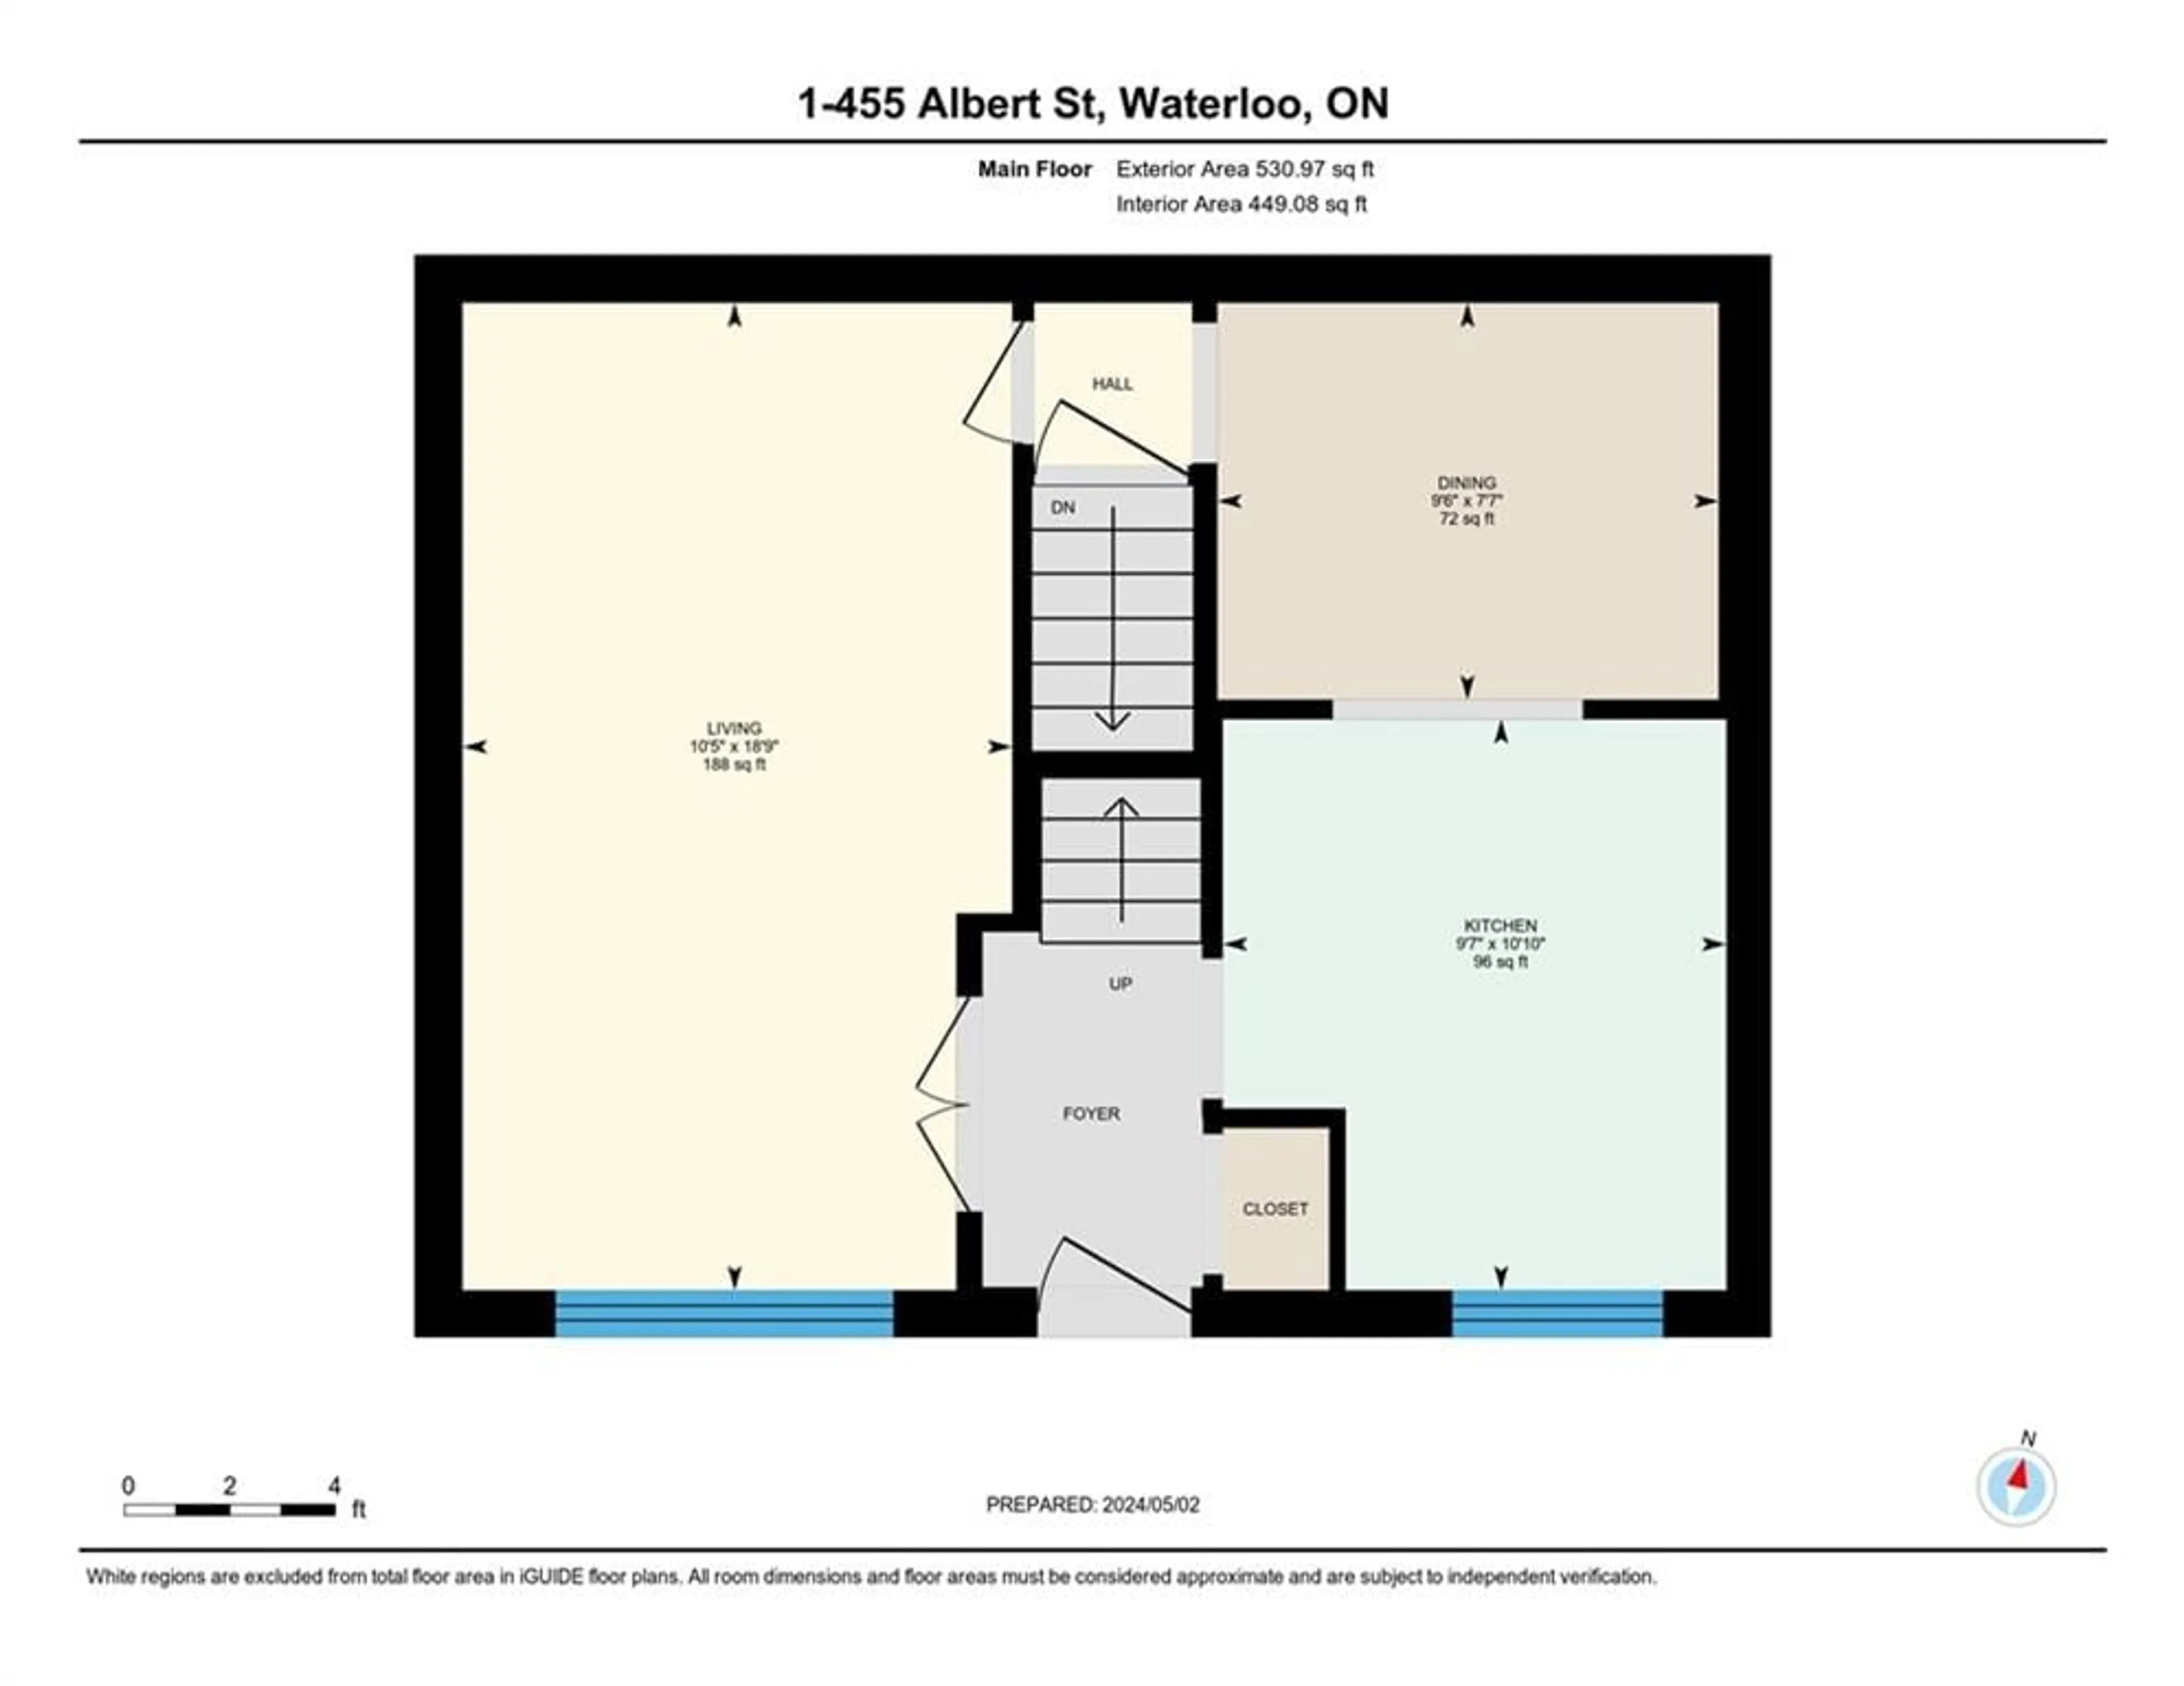 Floor plan for 455 Albert St #1, Waterloo Ontario N2L 5A7